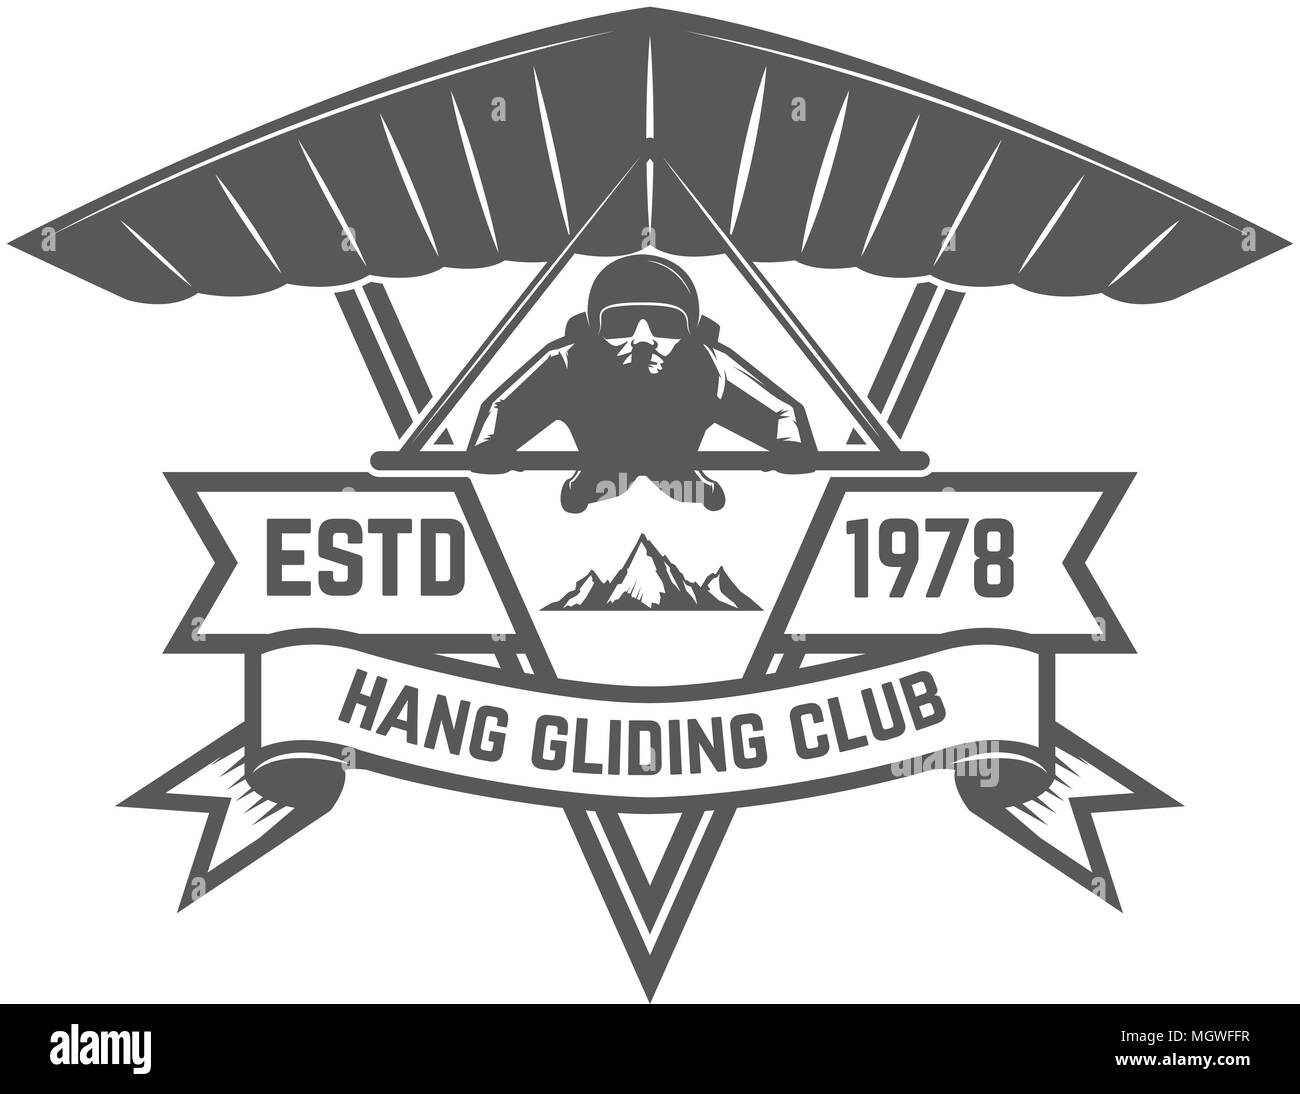 Hang gliding club emblem template. Design element for logo, label, emblem, sign. Vector illustration Stock Vector